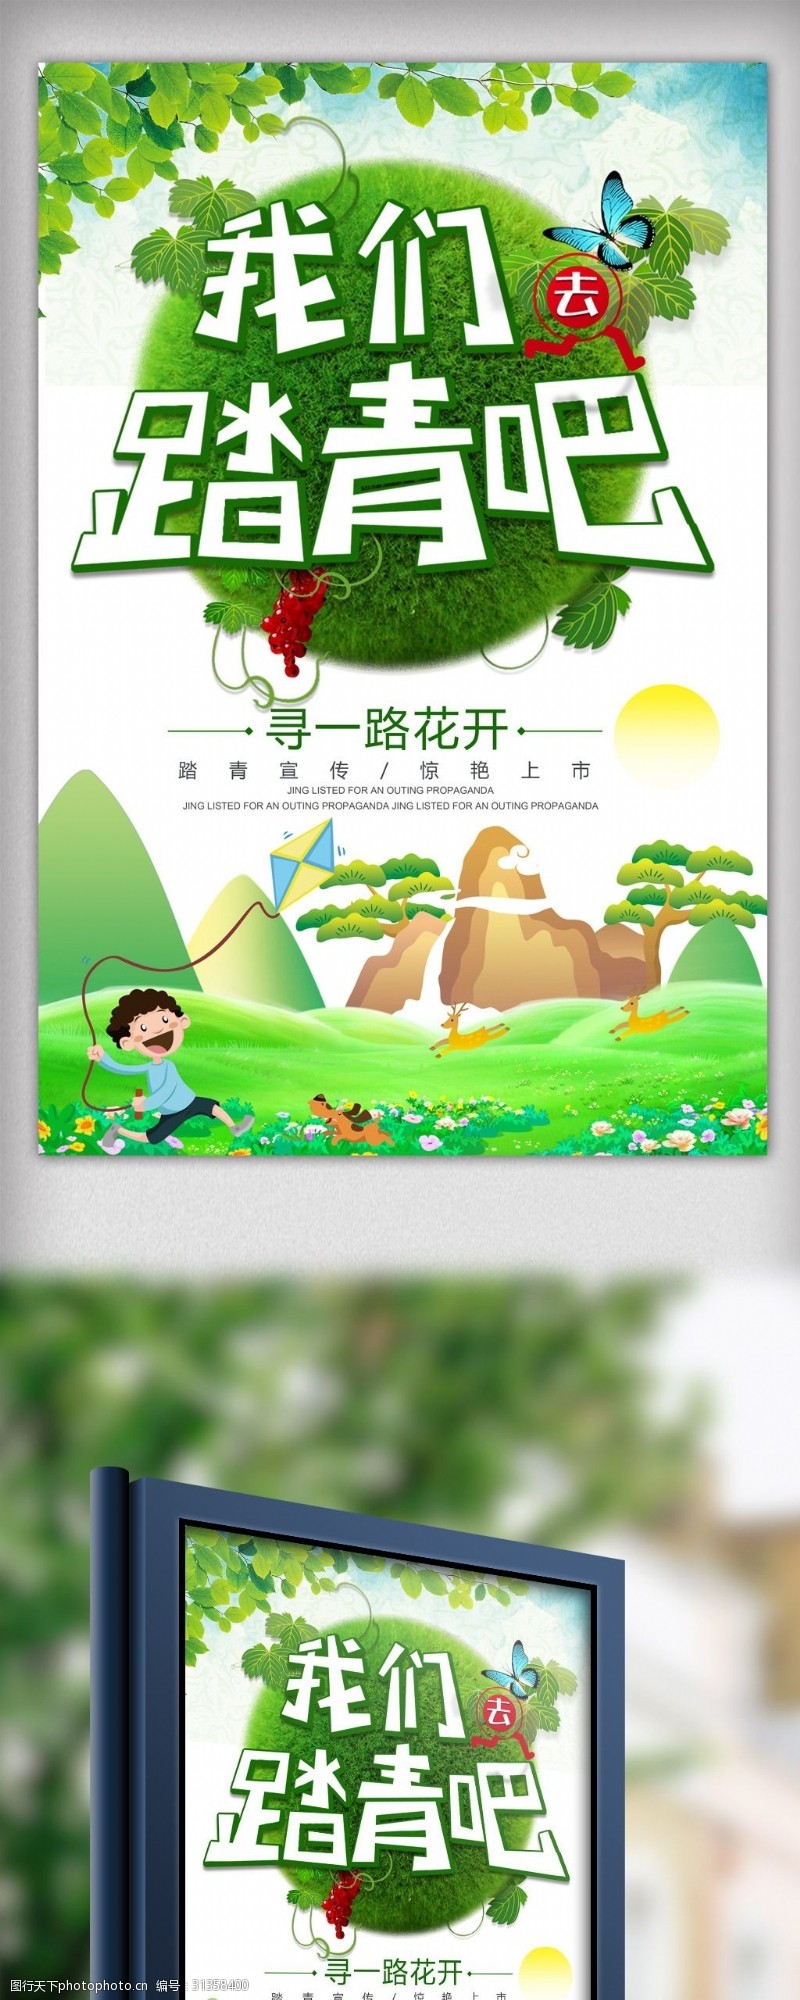 春节旅游春天一起去踏青旅游海报设计